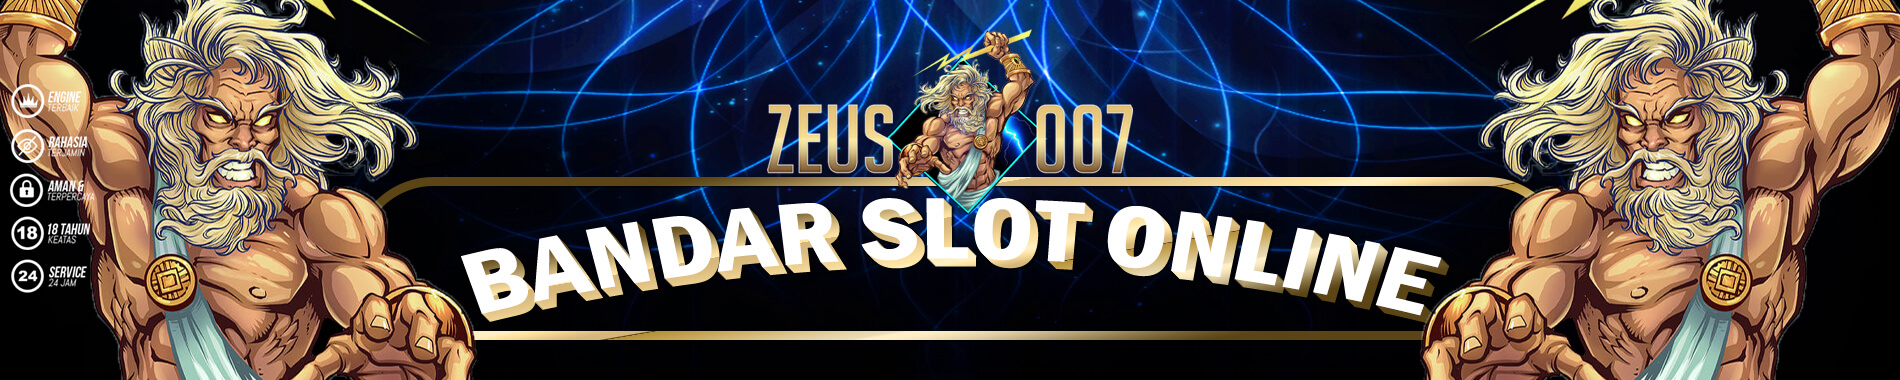 Slot Zeus 007 Online